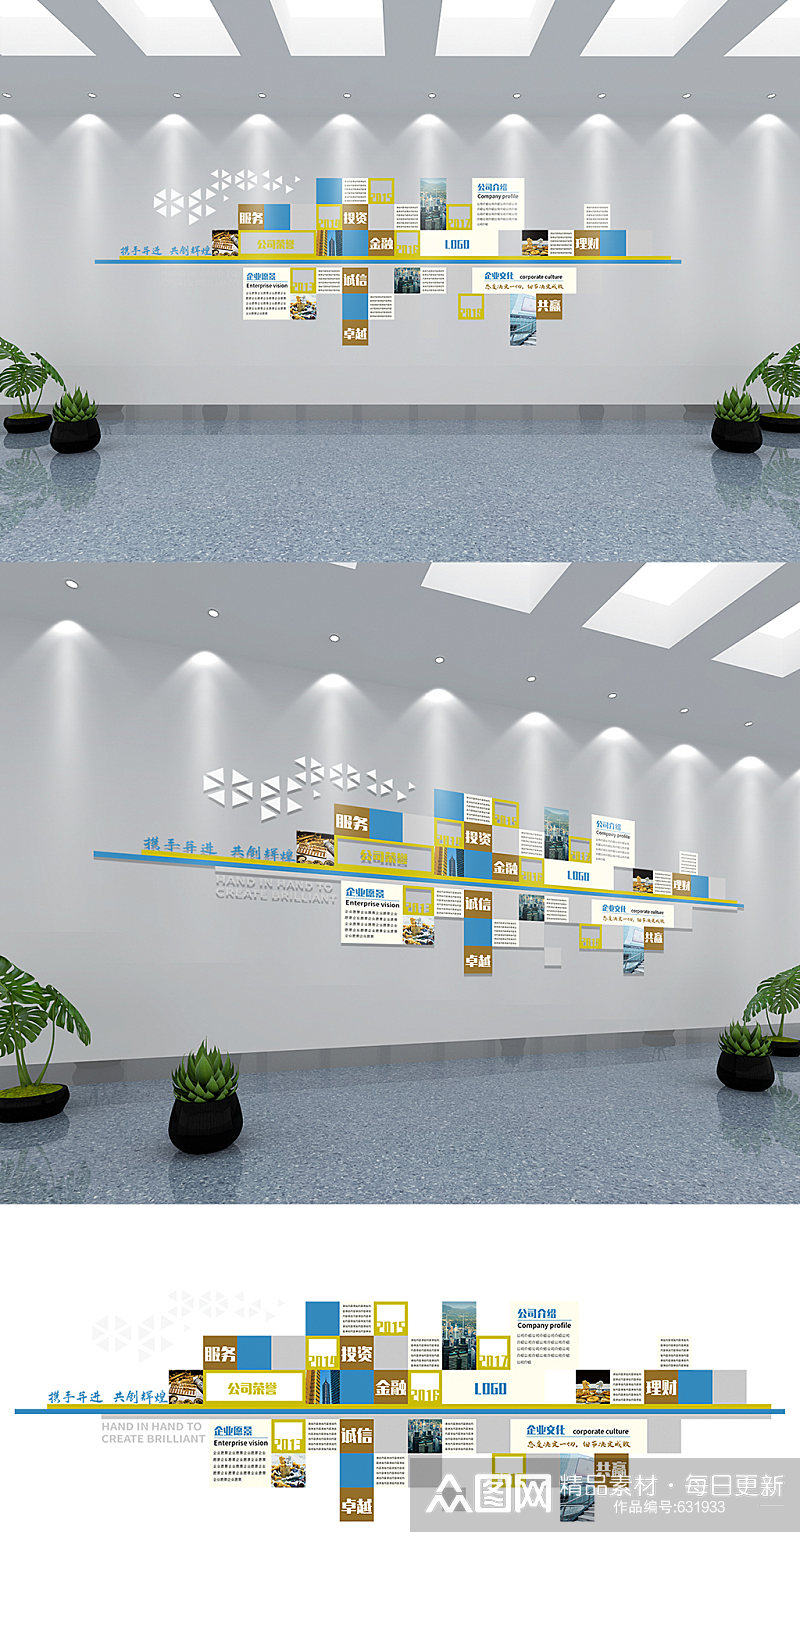 2020金融公司企业文化墙样板设计效果图素材